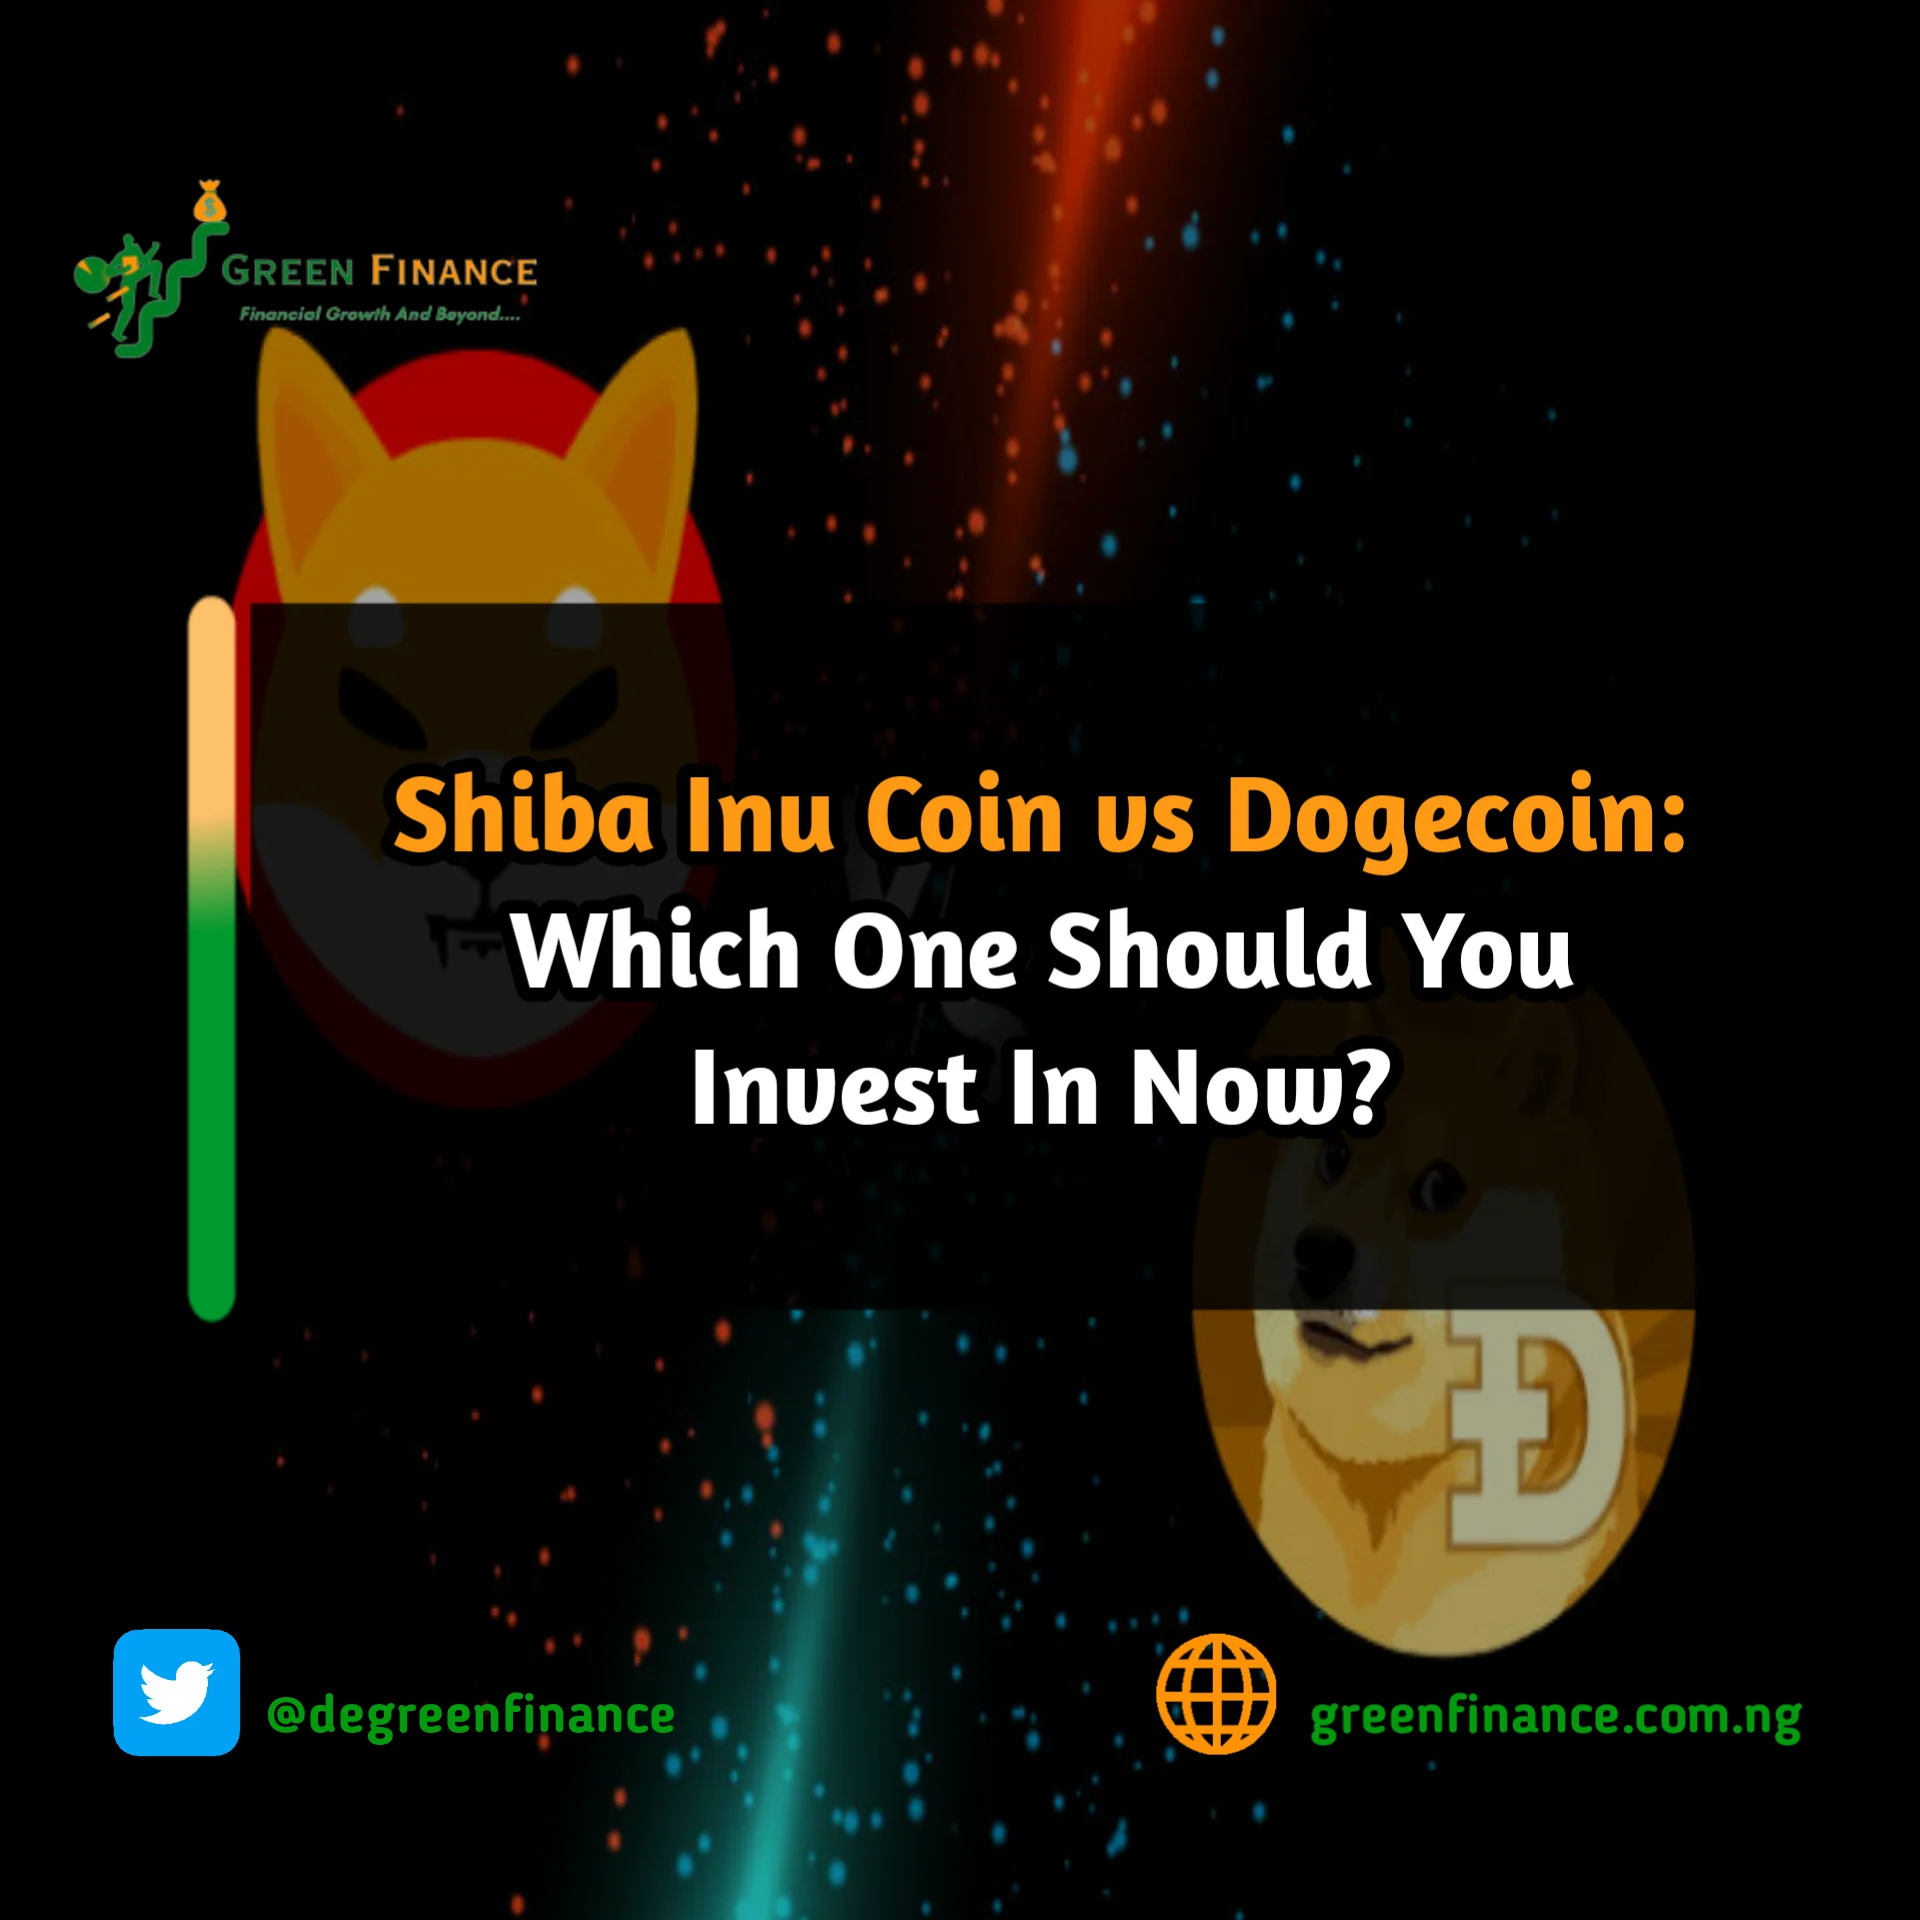 Shiba Inu coin vs Dogecoin